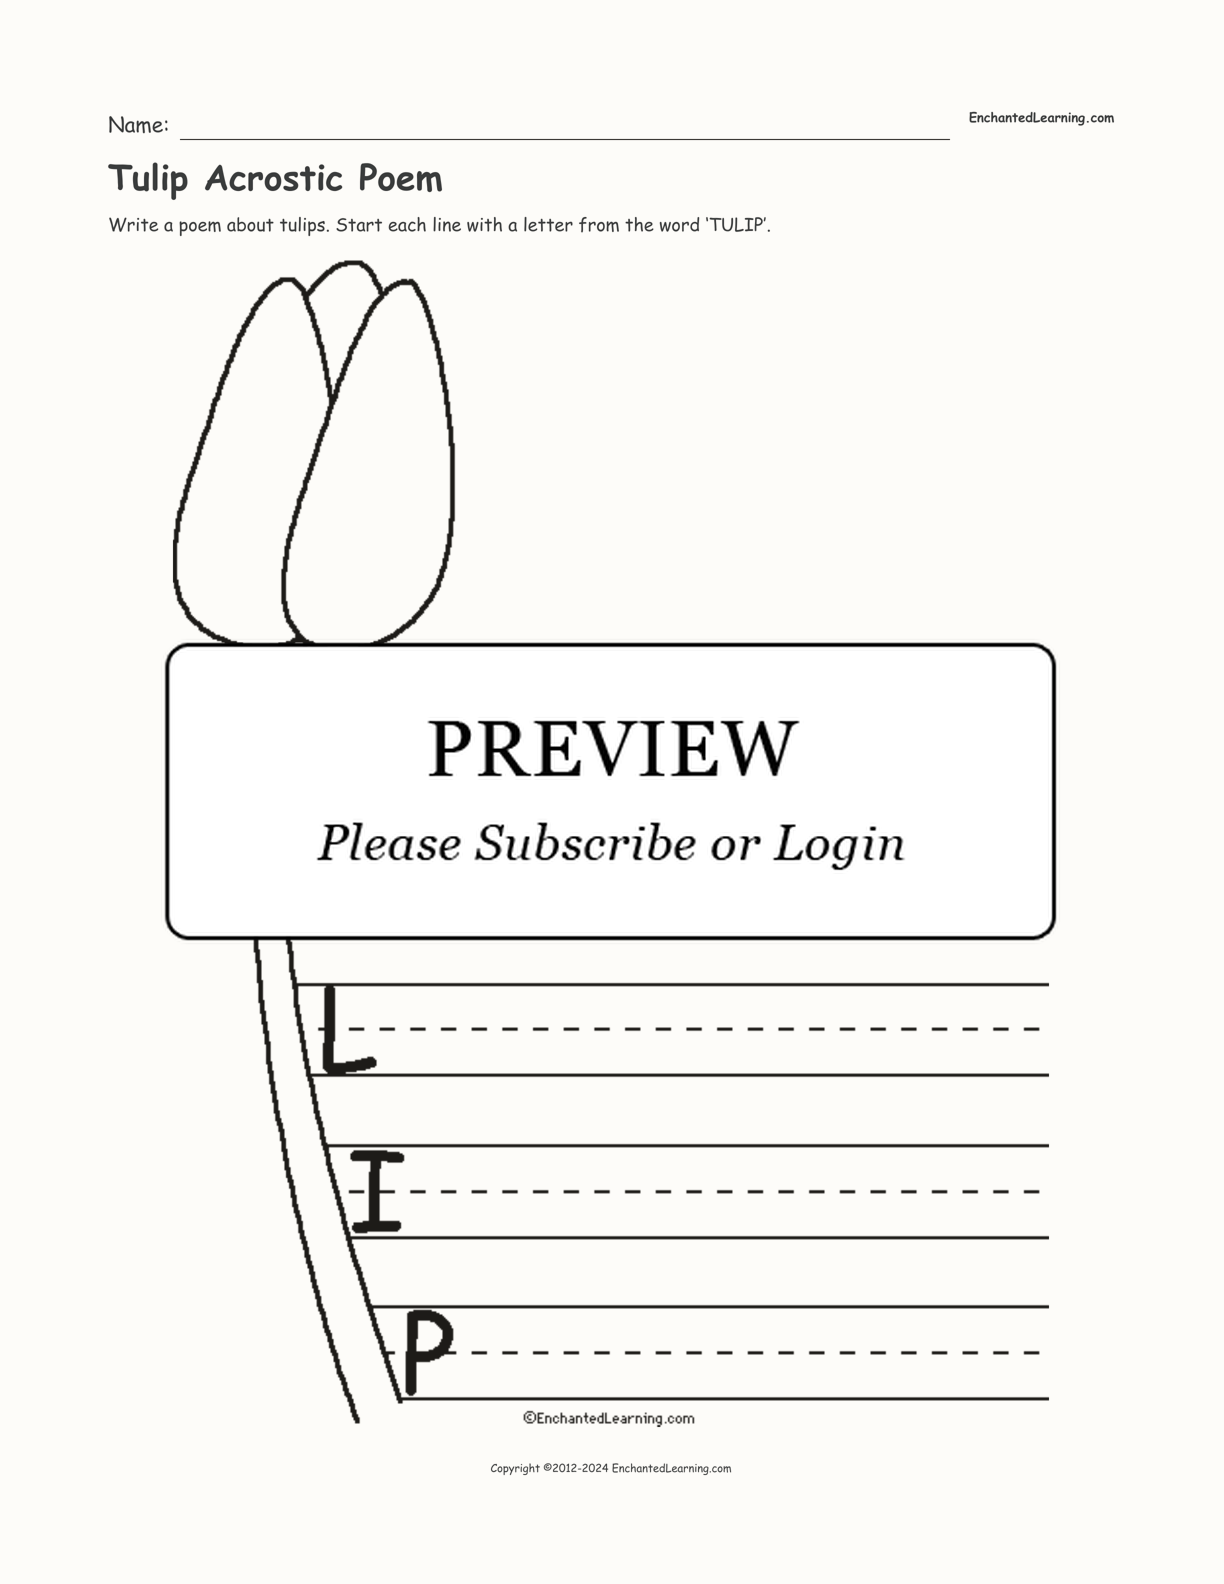 Tulip Acrostic Poem interactive worksheet page 1